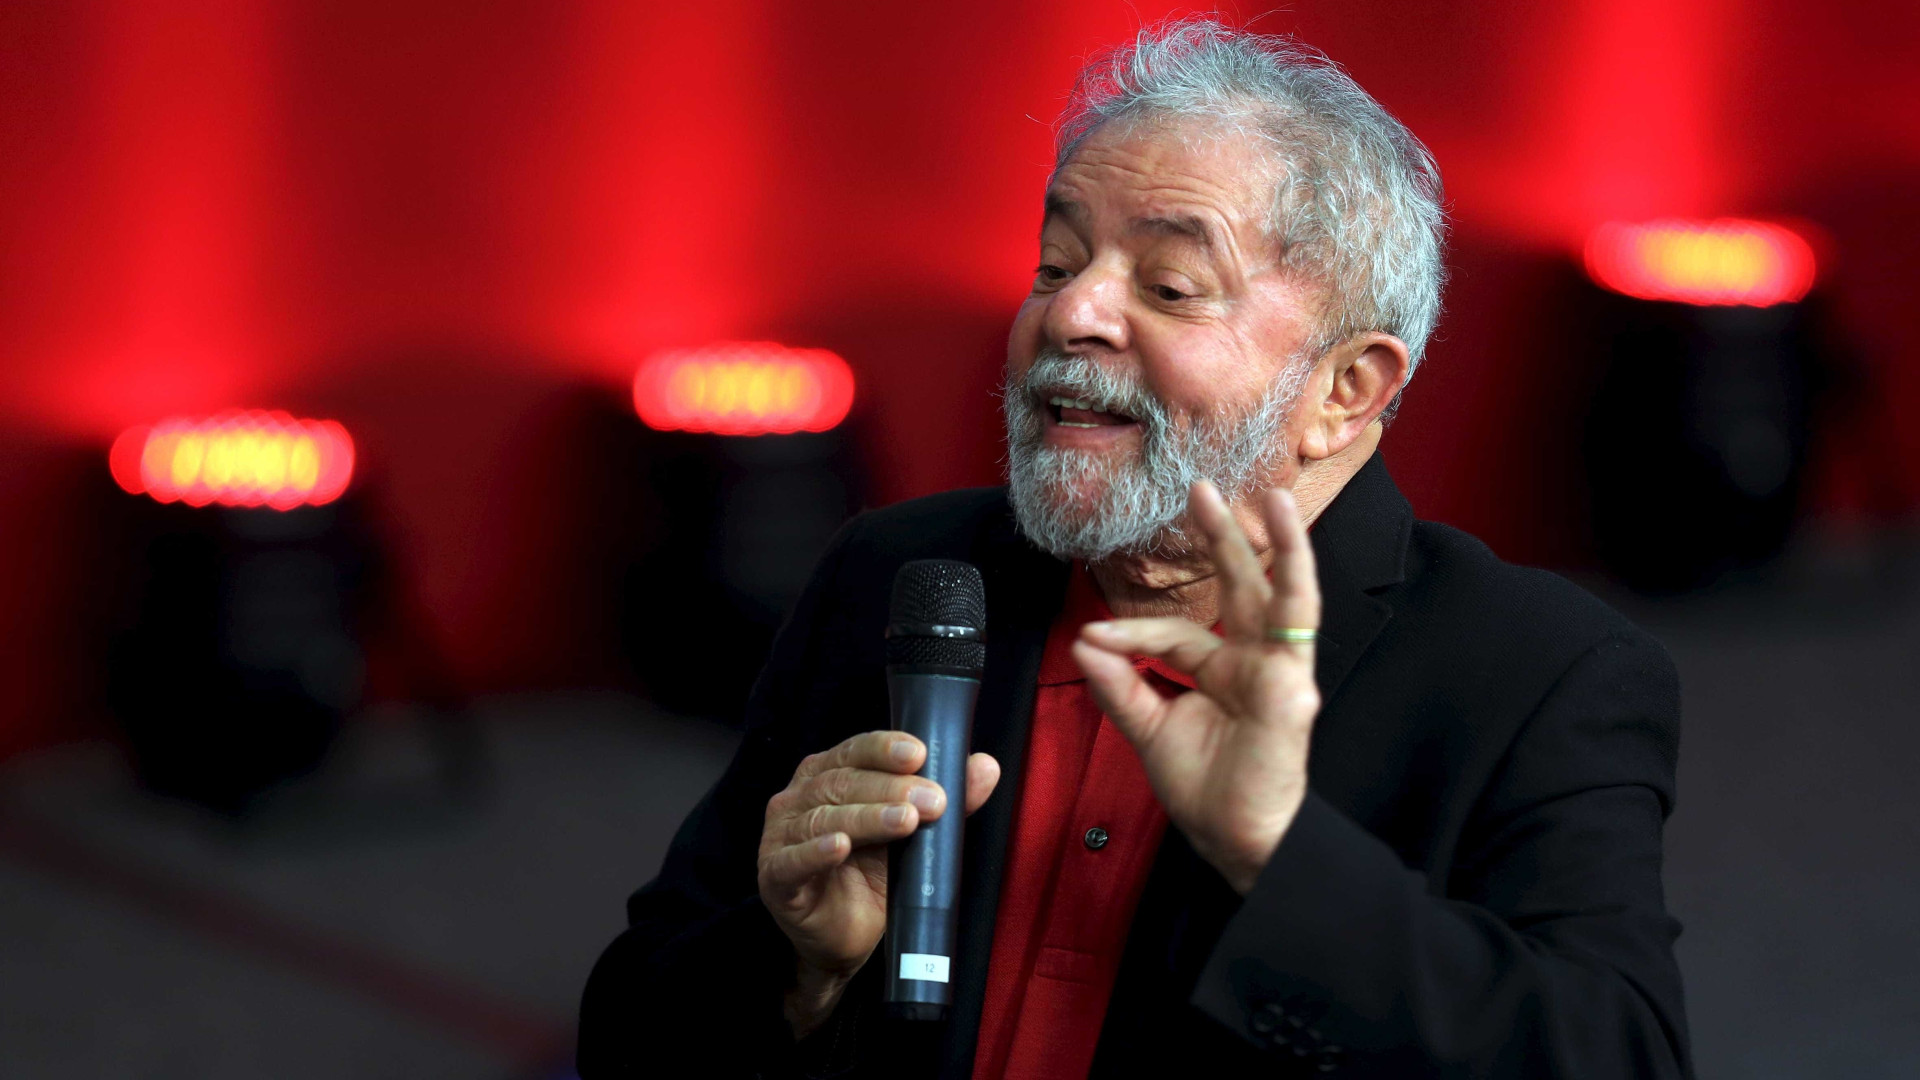 'NÃ£o sou pombo-correio para andar com tornozeleira', diz Lula